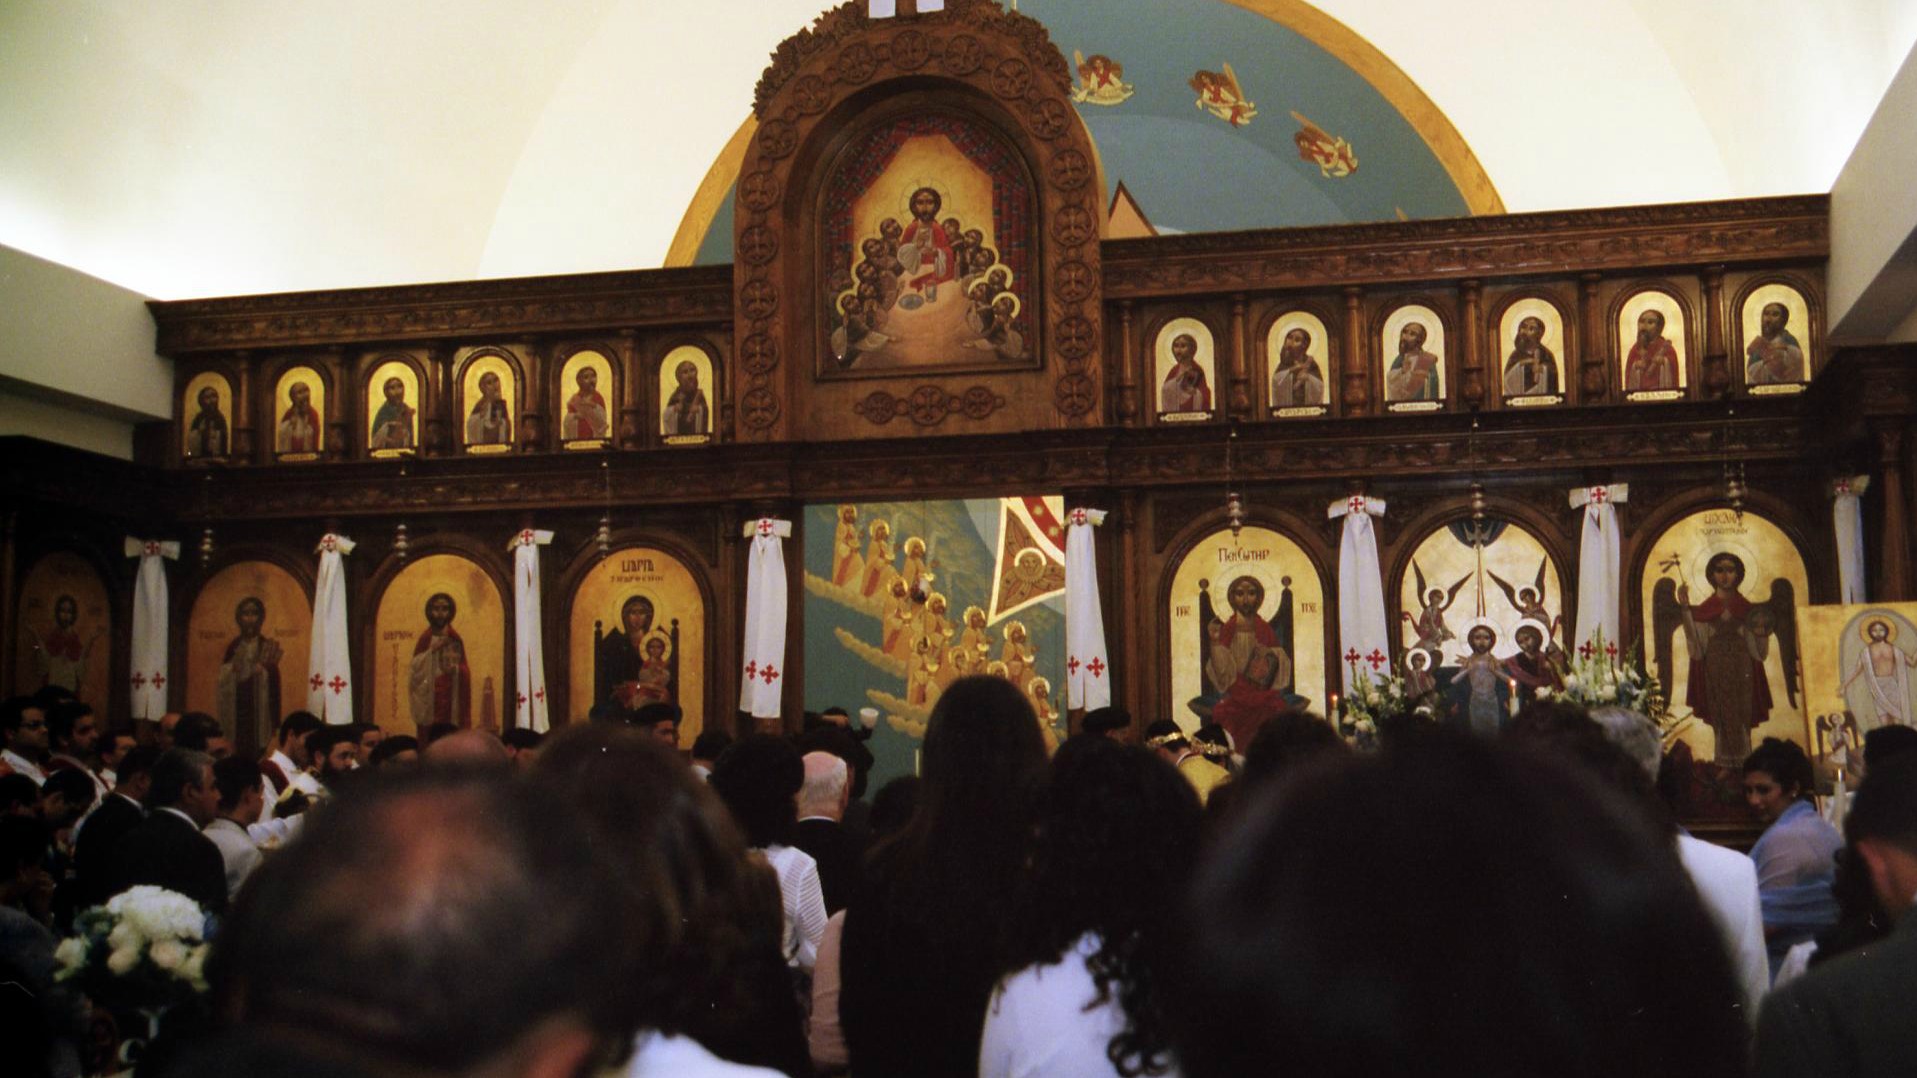 L'intérieur d'une église copte orthodoxe (Photo:Aquistbe/Flickr/CC BY-NC-ND 2.0)